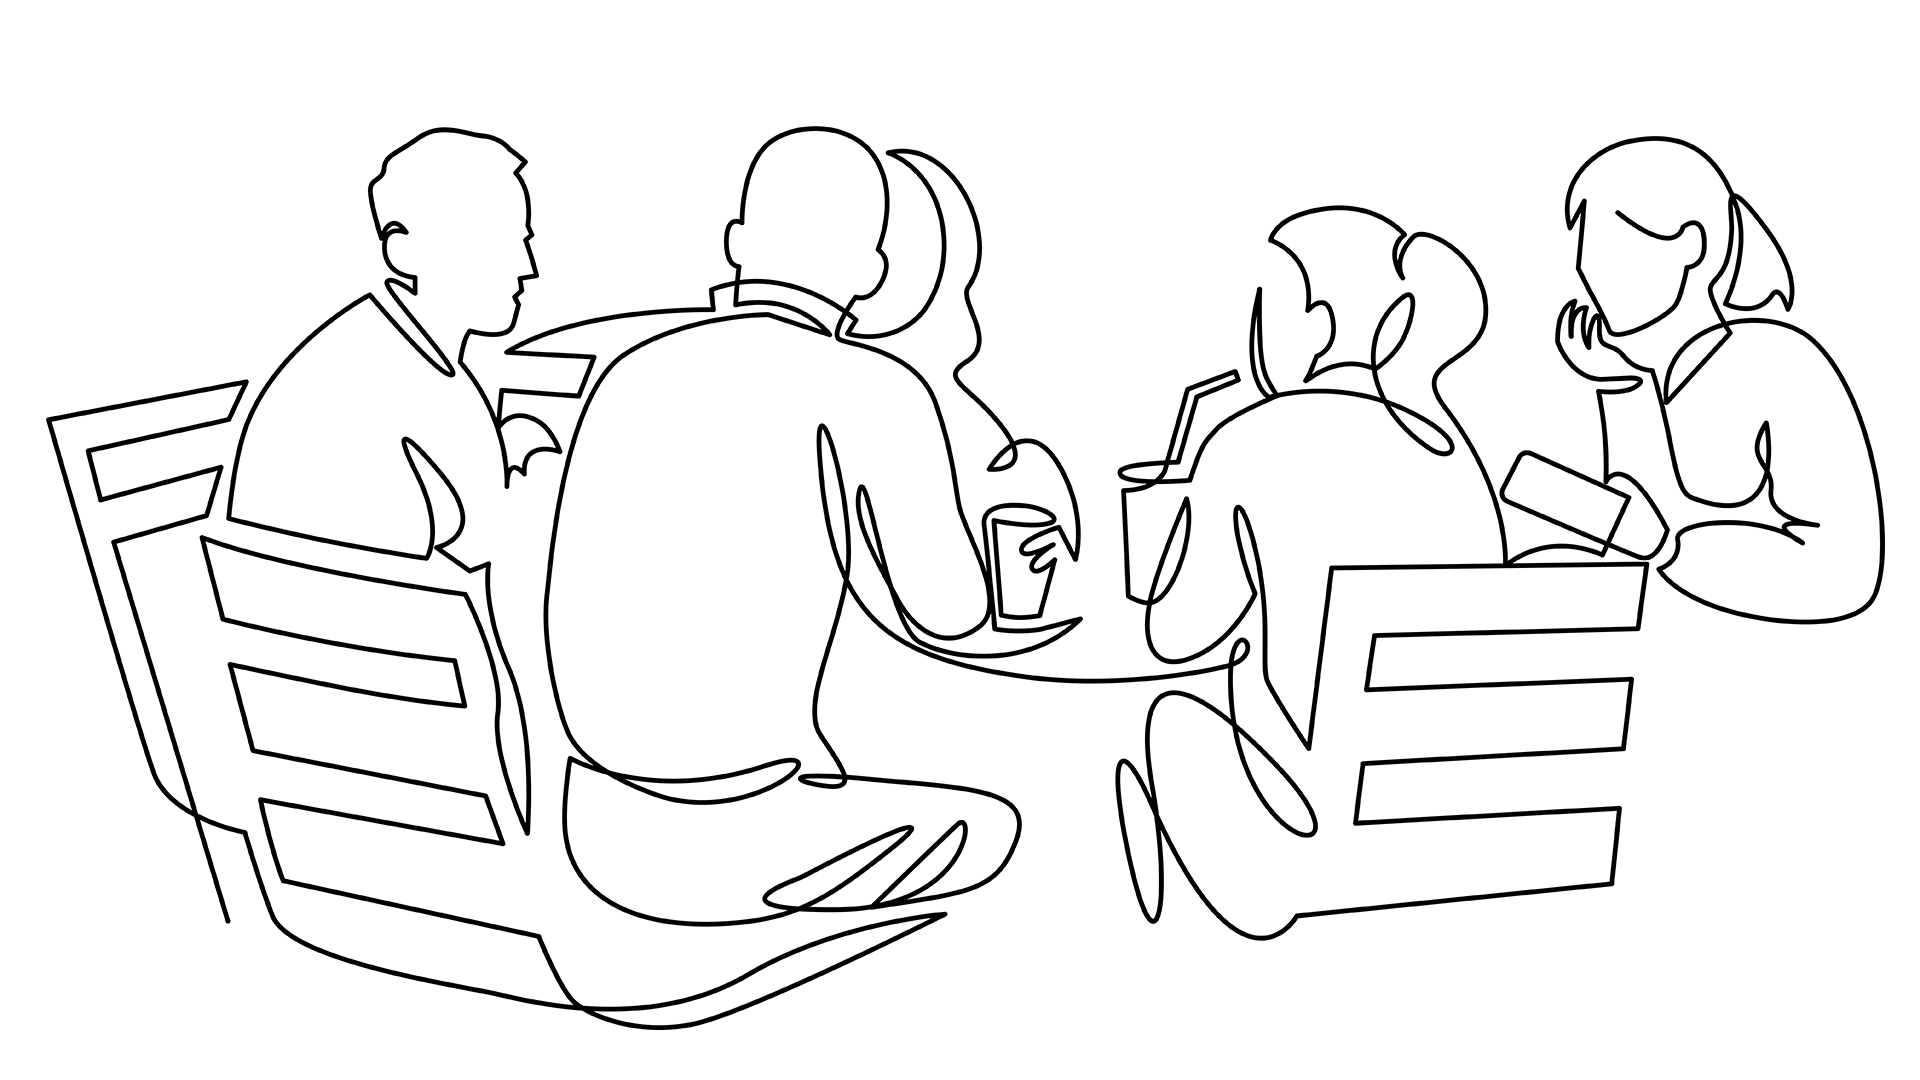 Illustratie groep rond de tafel